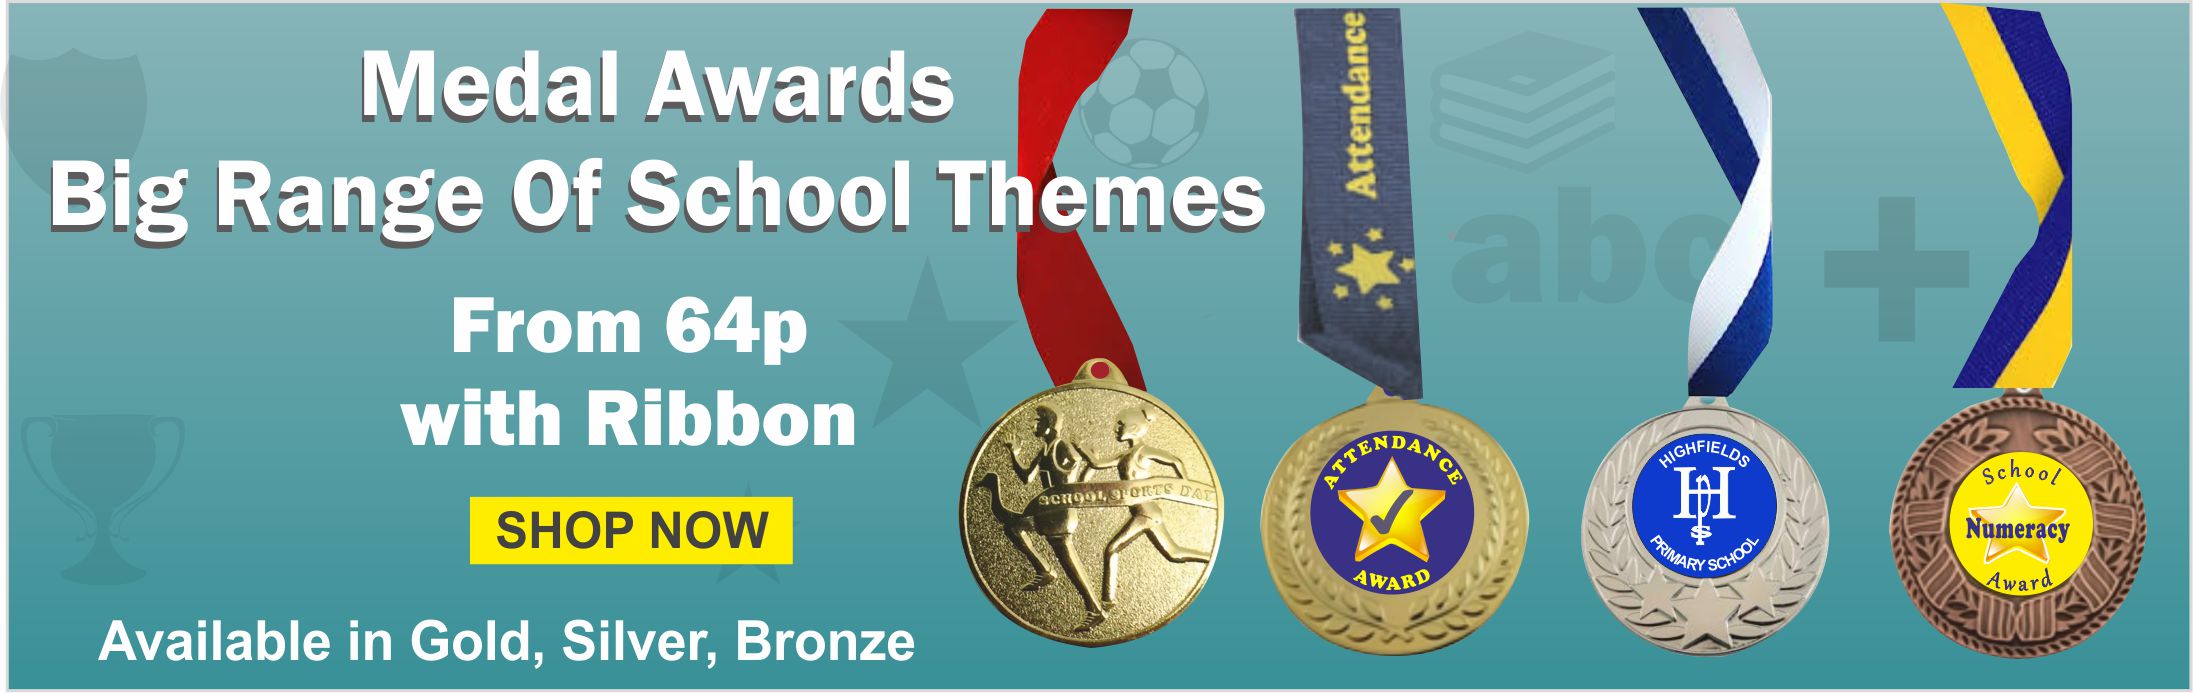 Massive range of School Trophies & Awards